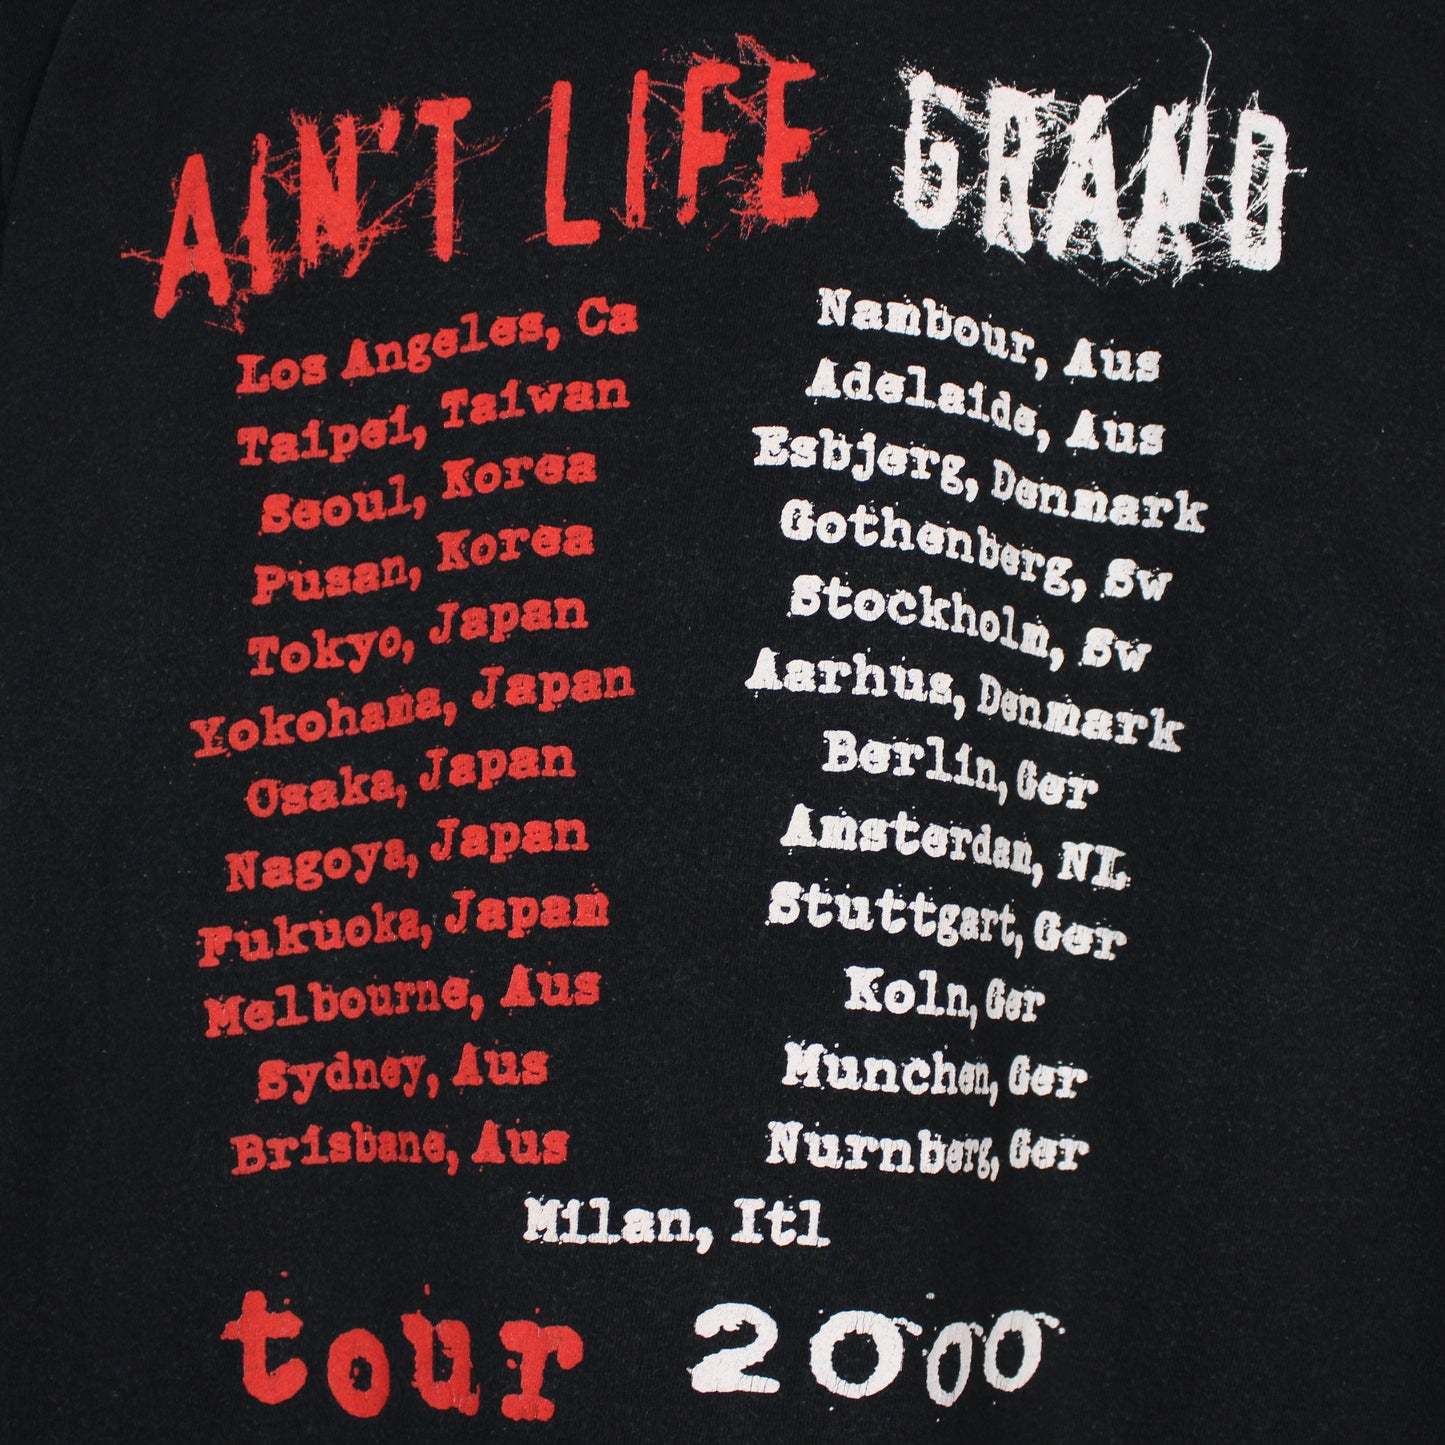 Vintage 2000 Slash's Snakepit Aint Life Grand Tour Tee - L